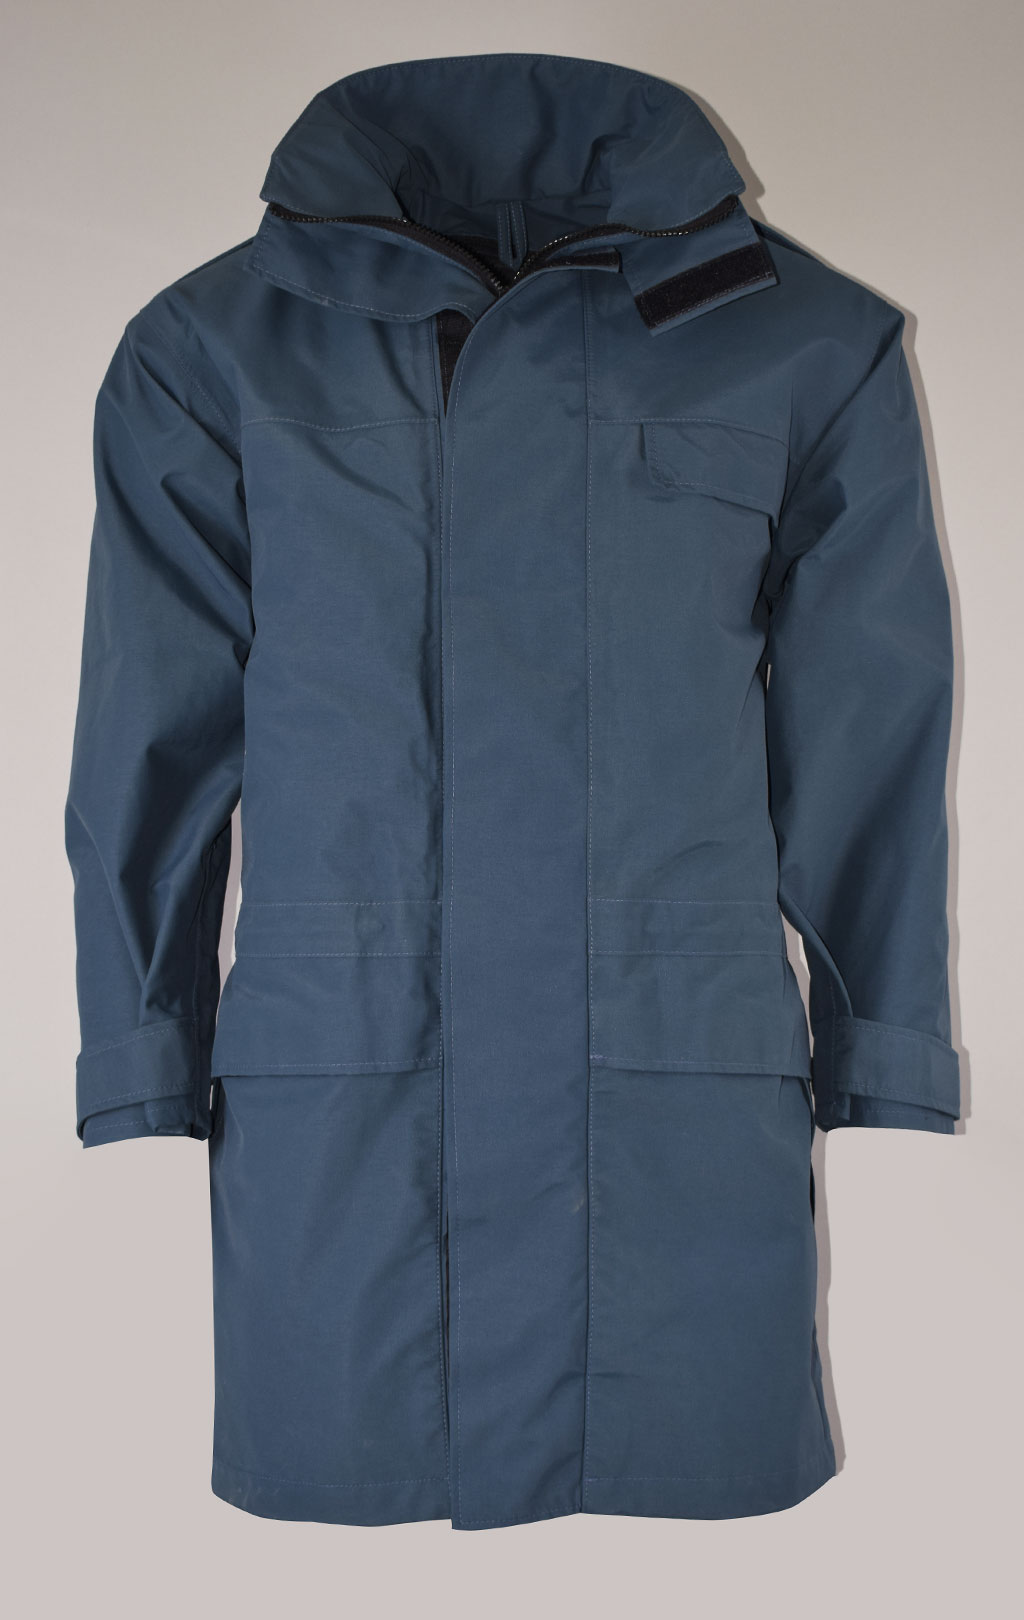 Куртка непромокаемая Gore-Tex RAF Gore-Tex с подстёжкой navy б/у Англия